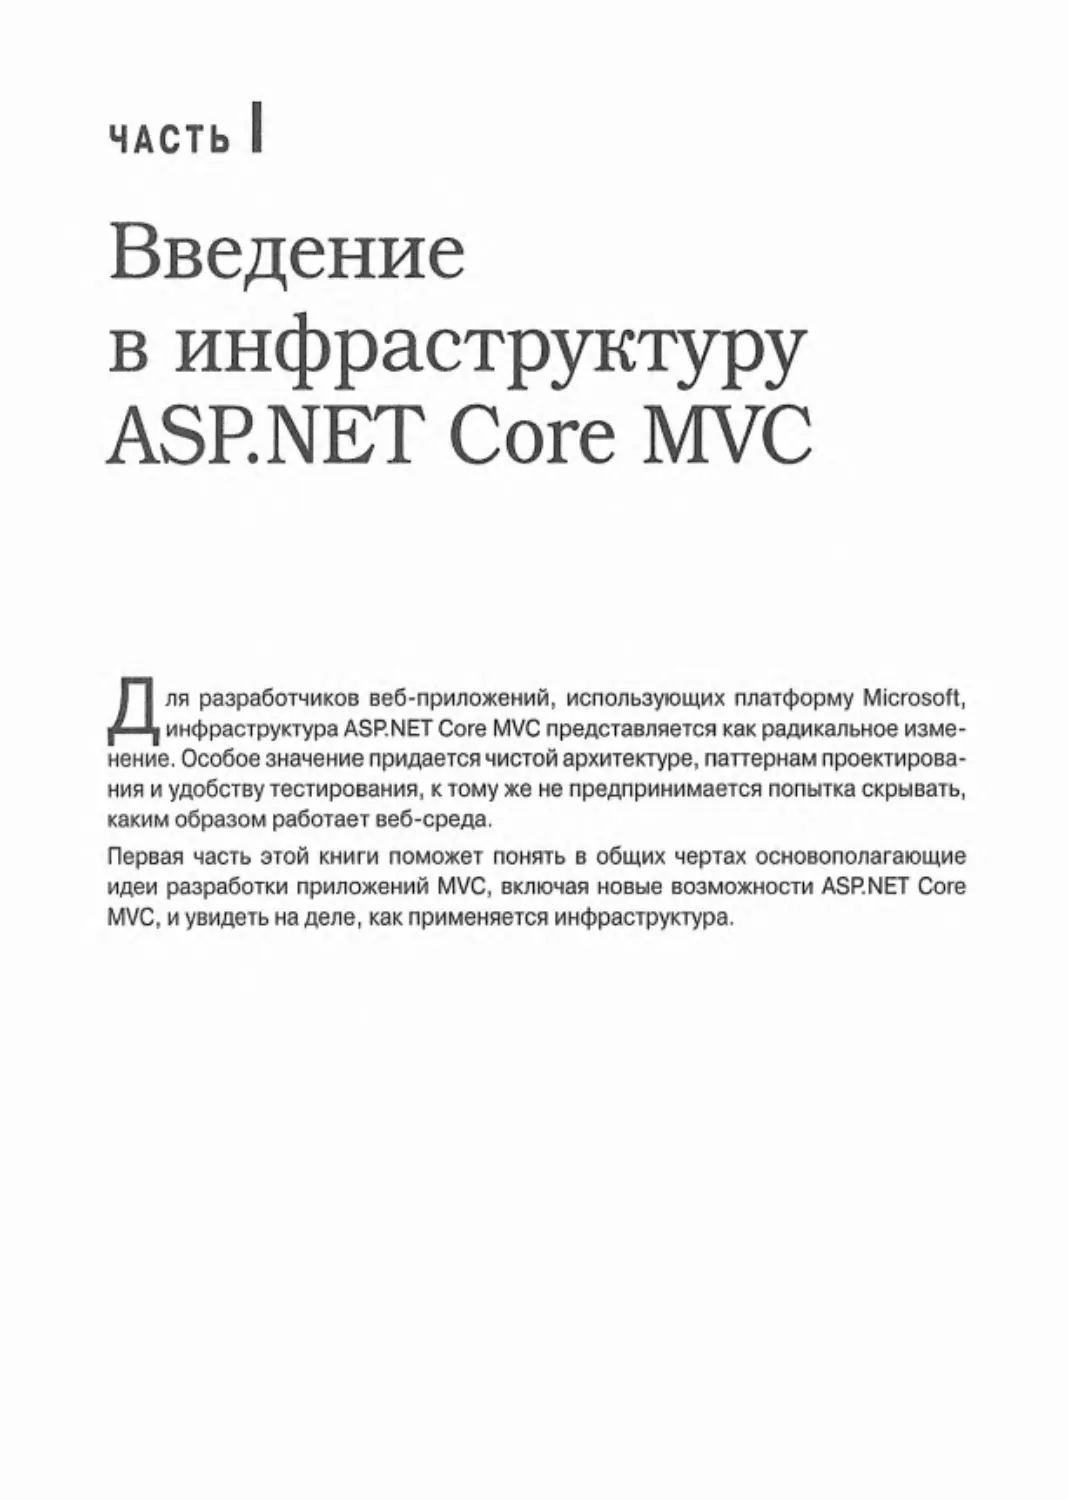 Часть I. Введение в инфраструктуру ASP.NET Core MVC